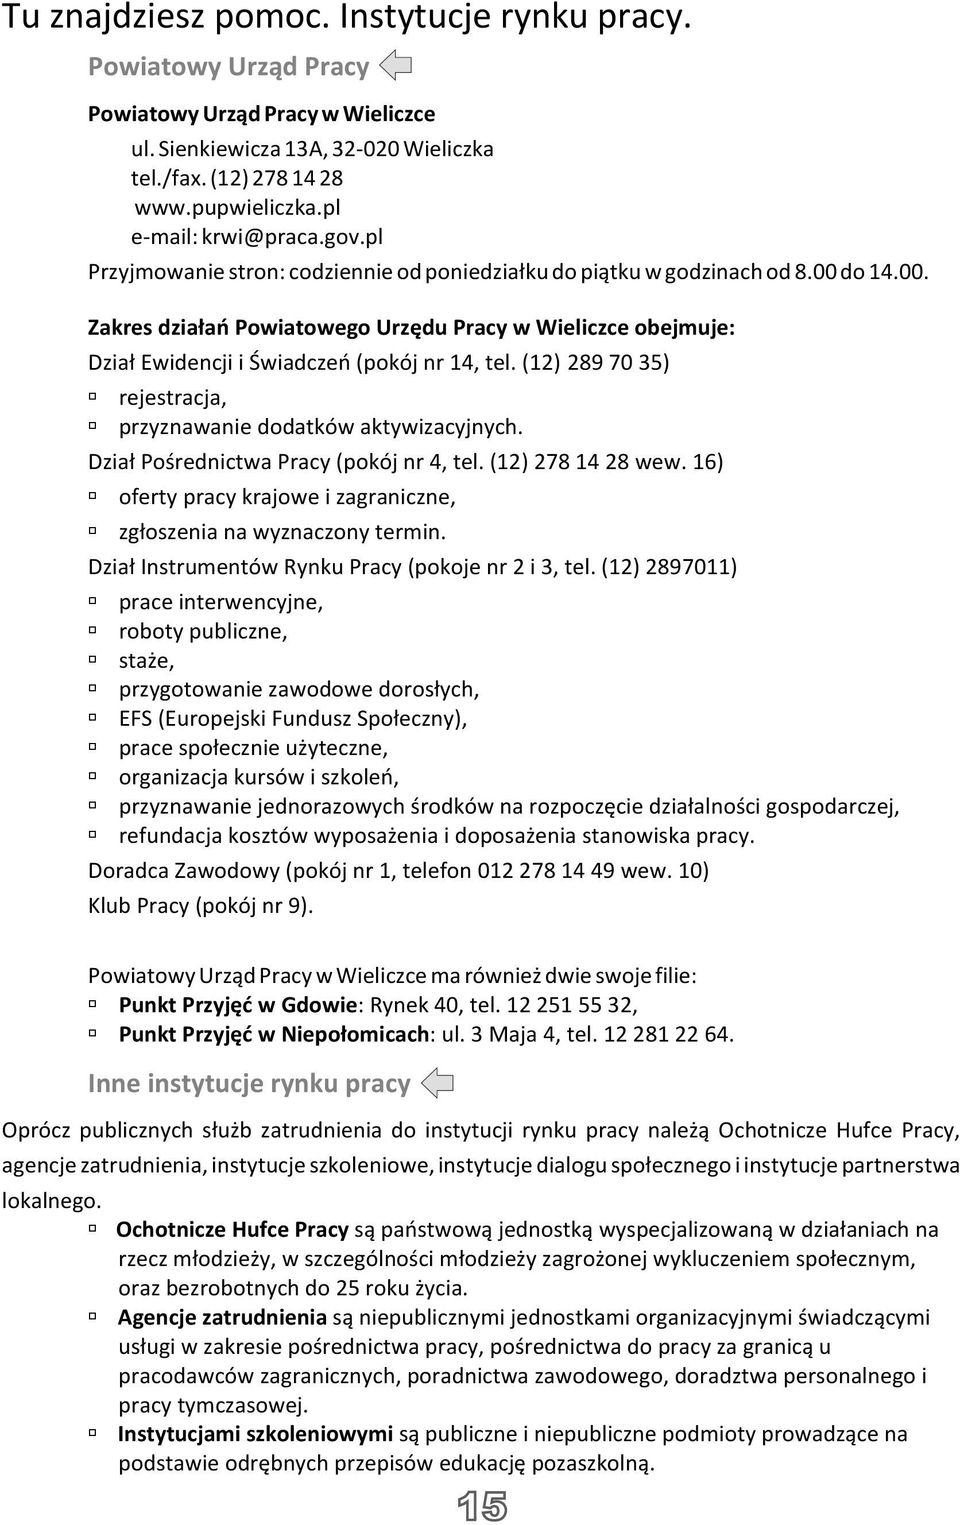 do 14.00. Zakres dzia³añ Powiatowego Urzêdu Pracy w Wieliczce obejmuje: Dzia³ Ewidencji i Œwiadczeñ (pokój nr 14, tel. (12) 289 70 35) rejestracja, przyznawanie dodatków aktywizacyjnych.